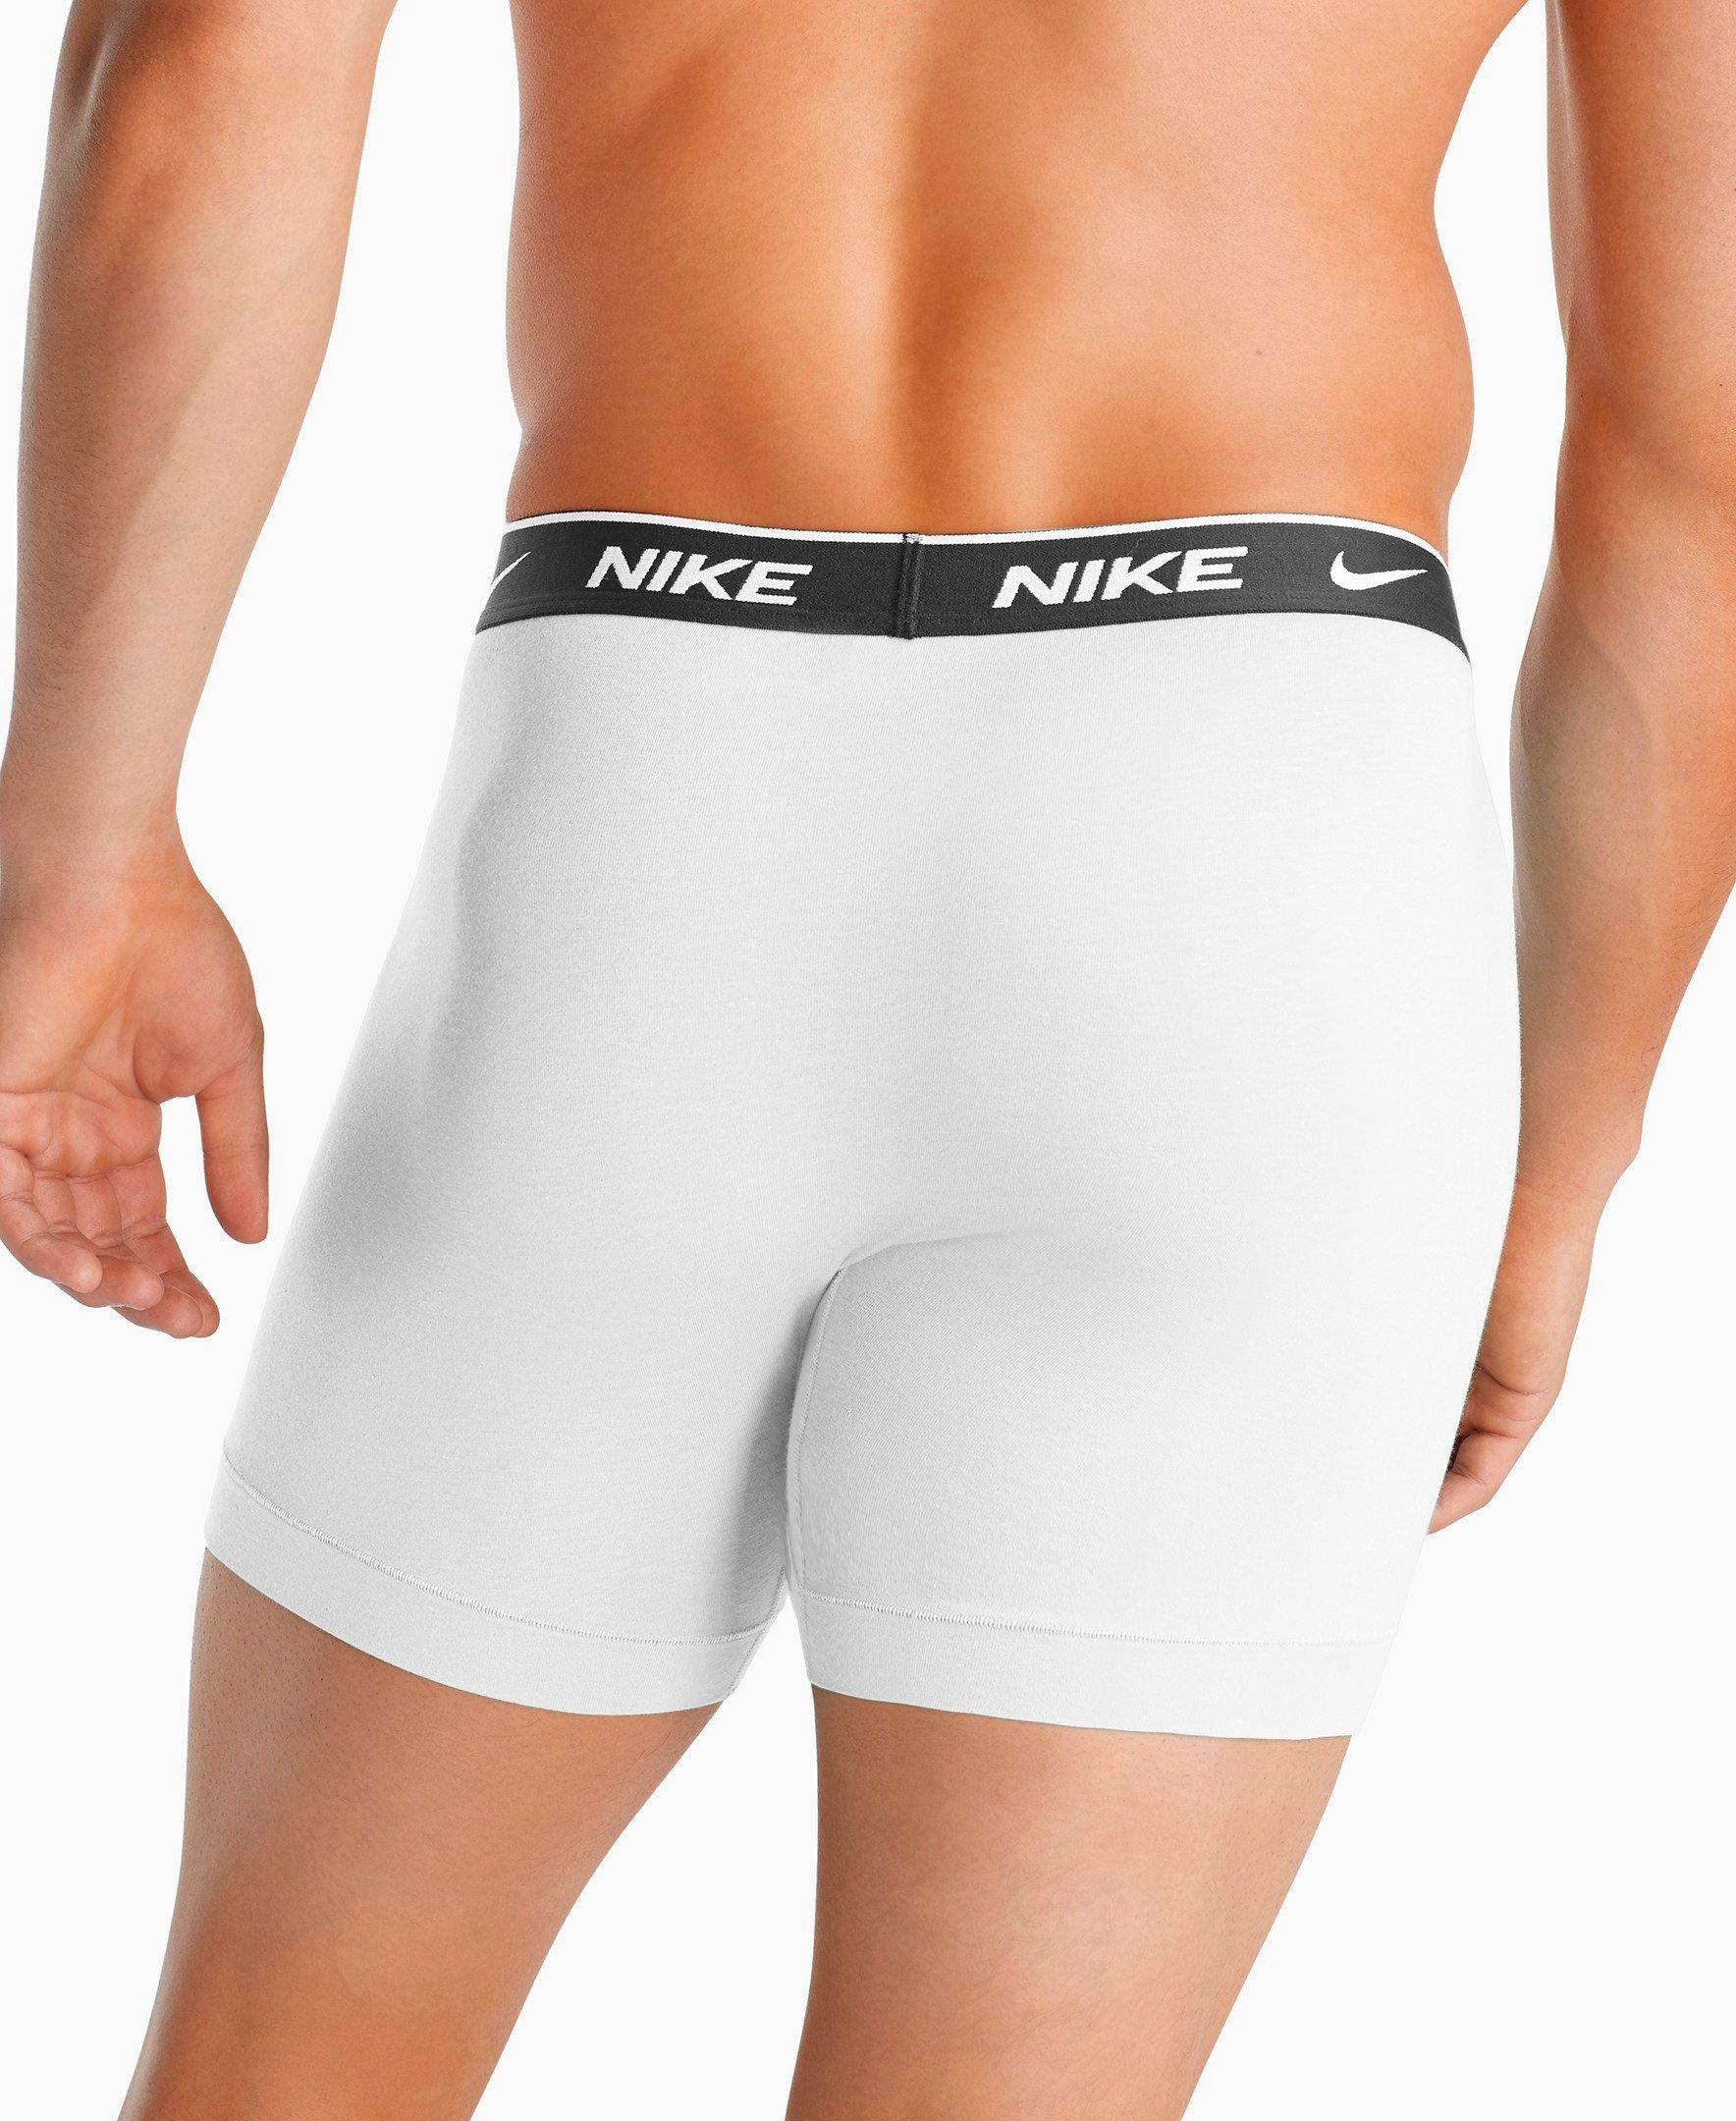 nike cotton underwear